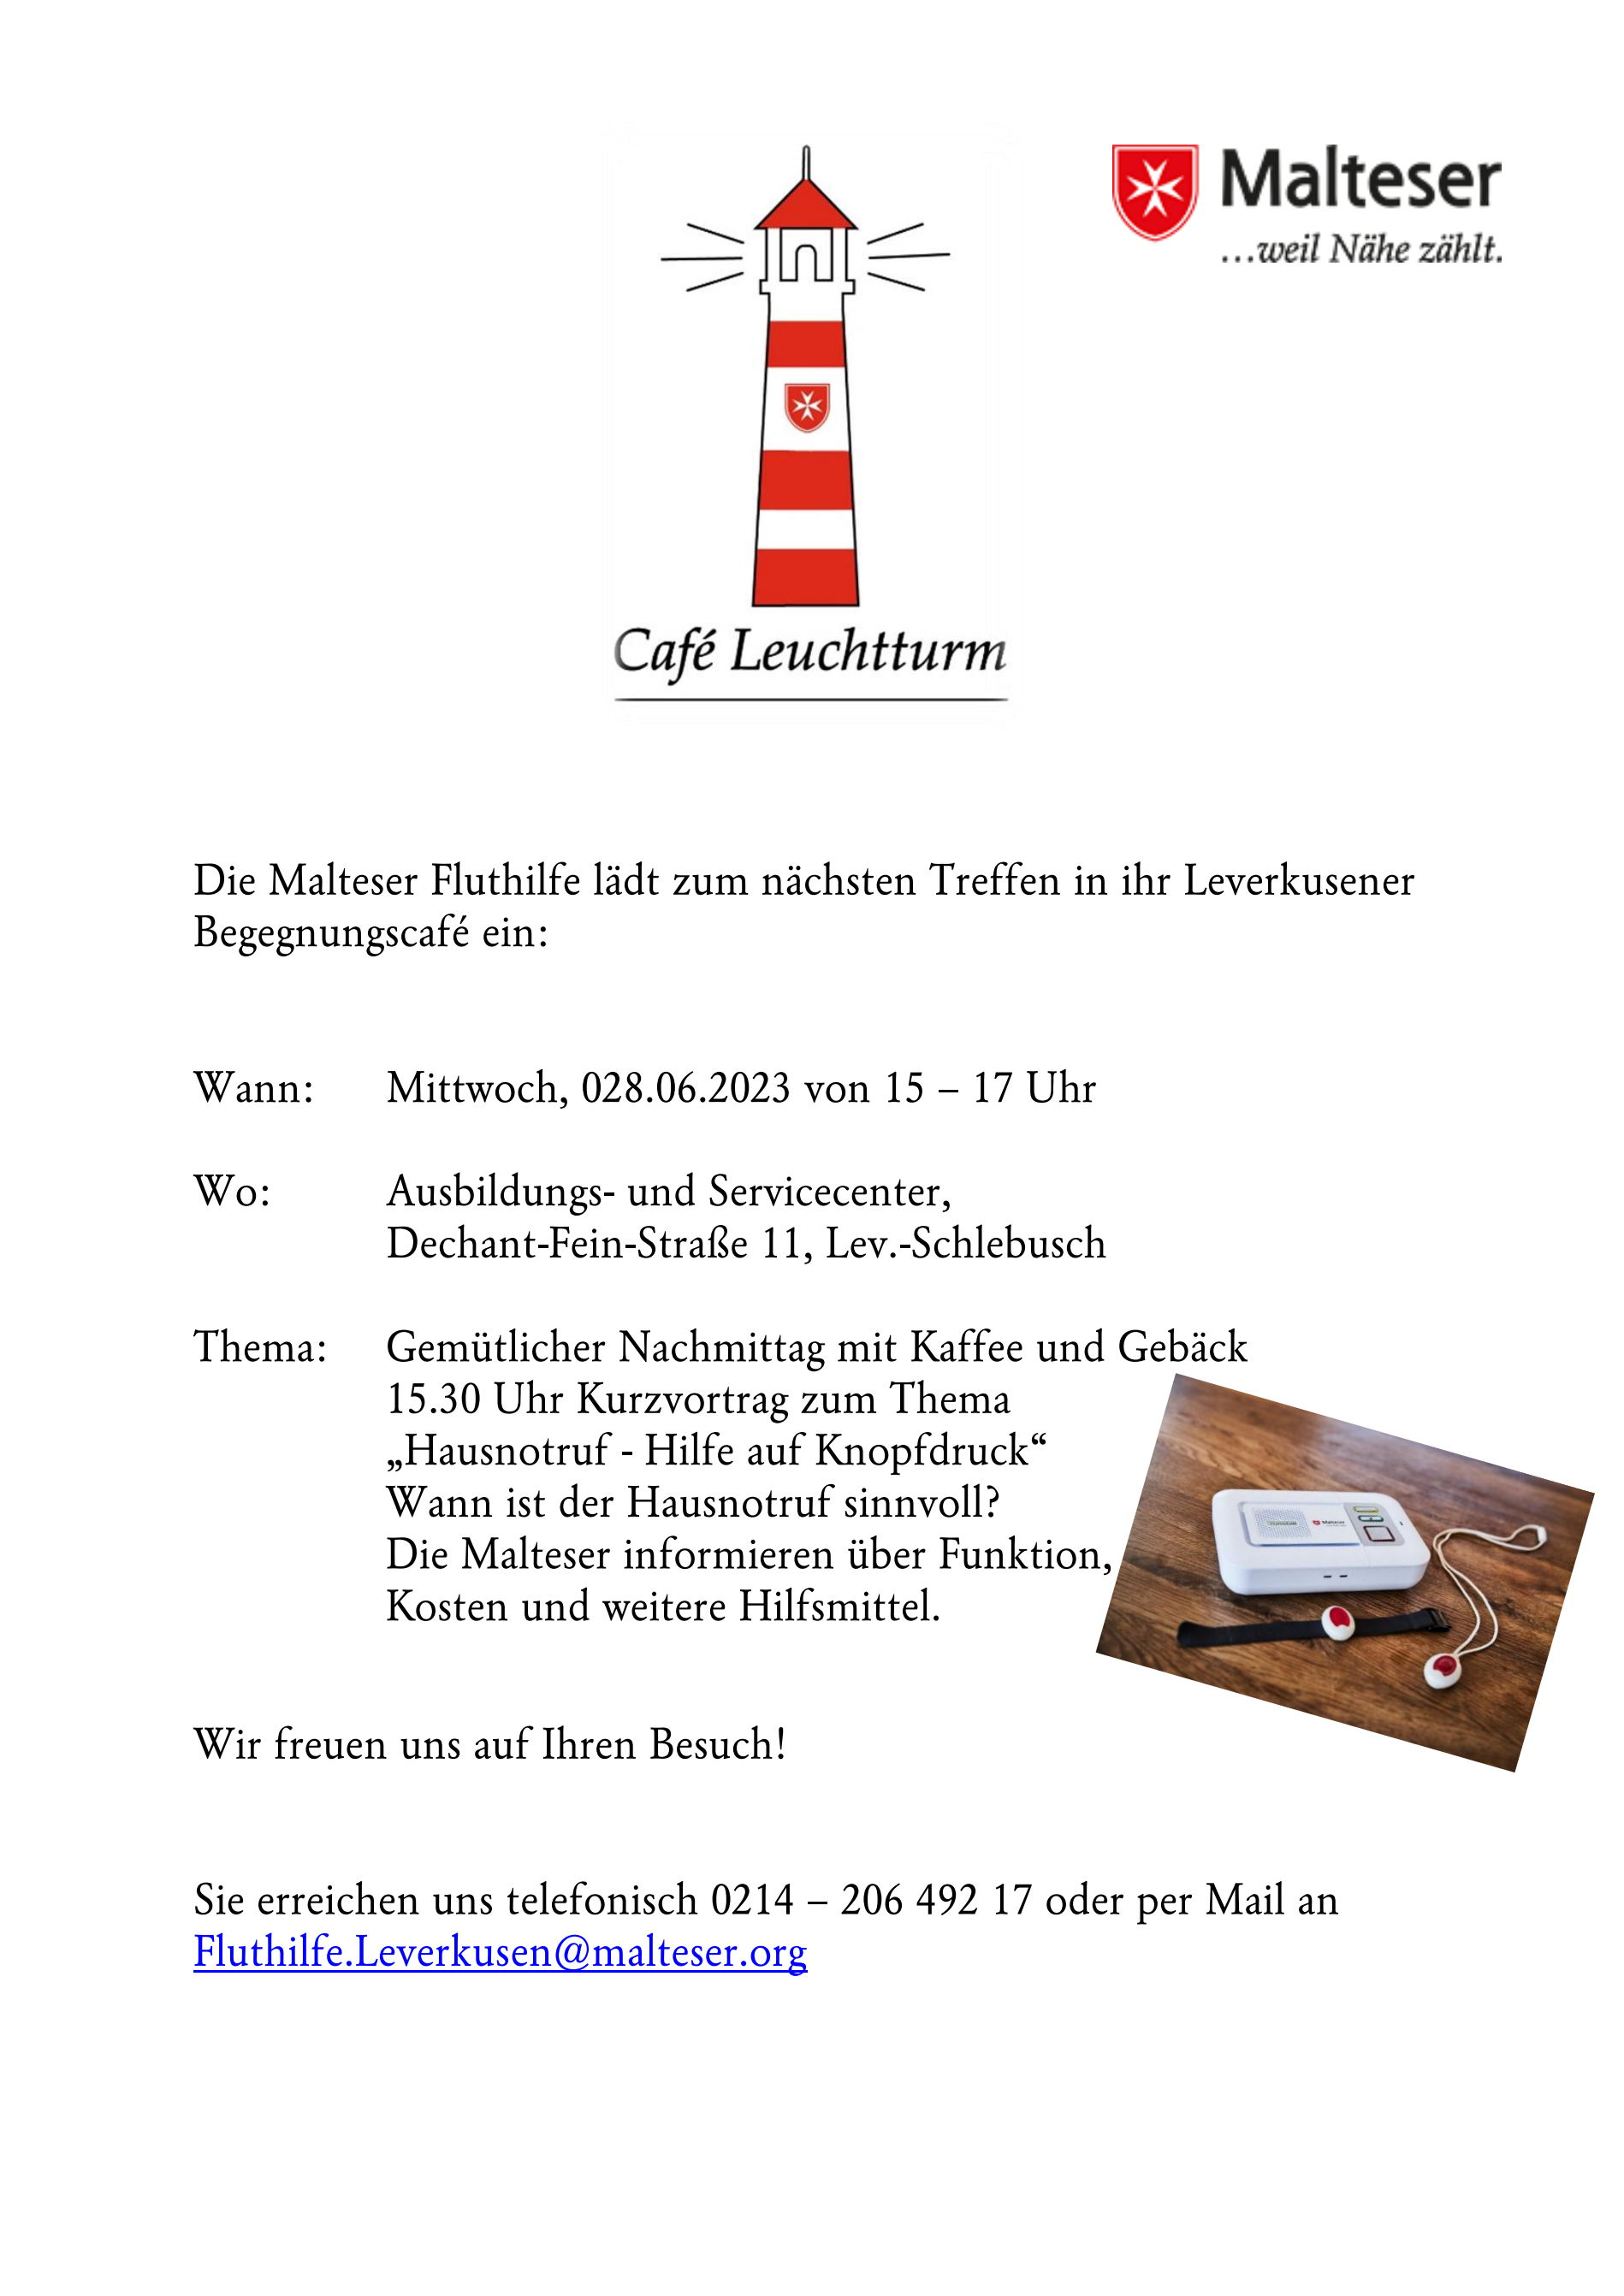 Malteser Leverkusen mit dem Cafe leuchtturm am 28.06.2023 // Grafik: Malteser Leverkusen